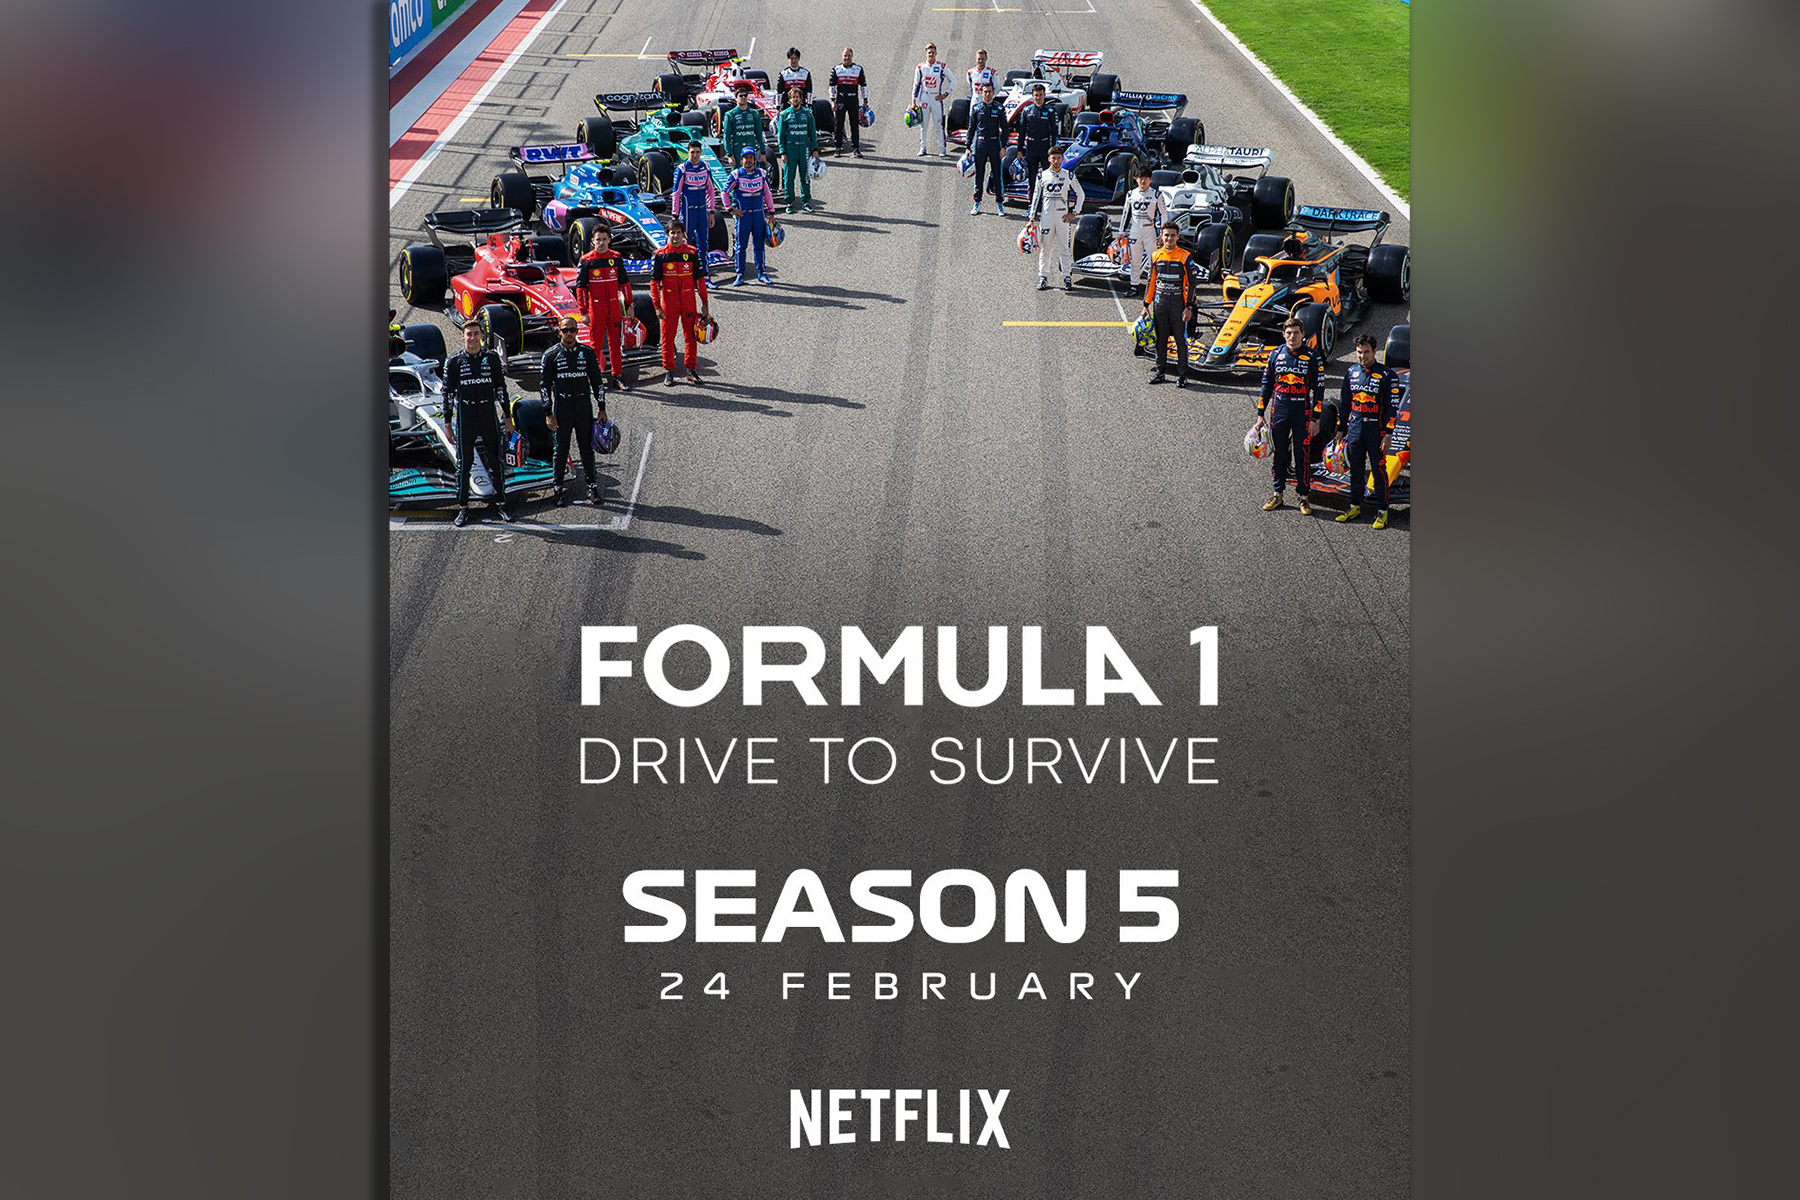 Formel 1 auf Netflix Fünfte Staffel „Drive to Survive“ startet heute F1 -Insider